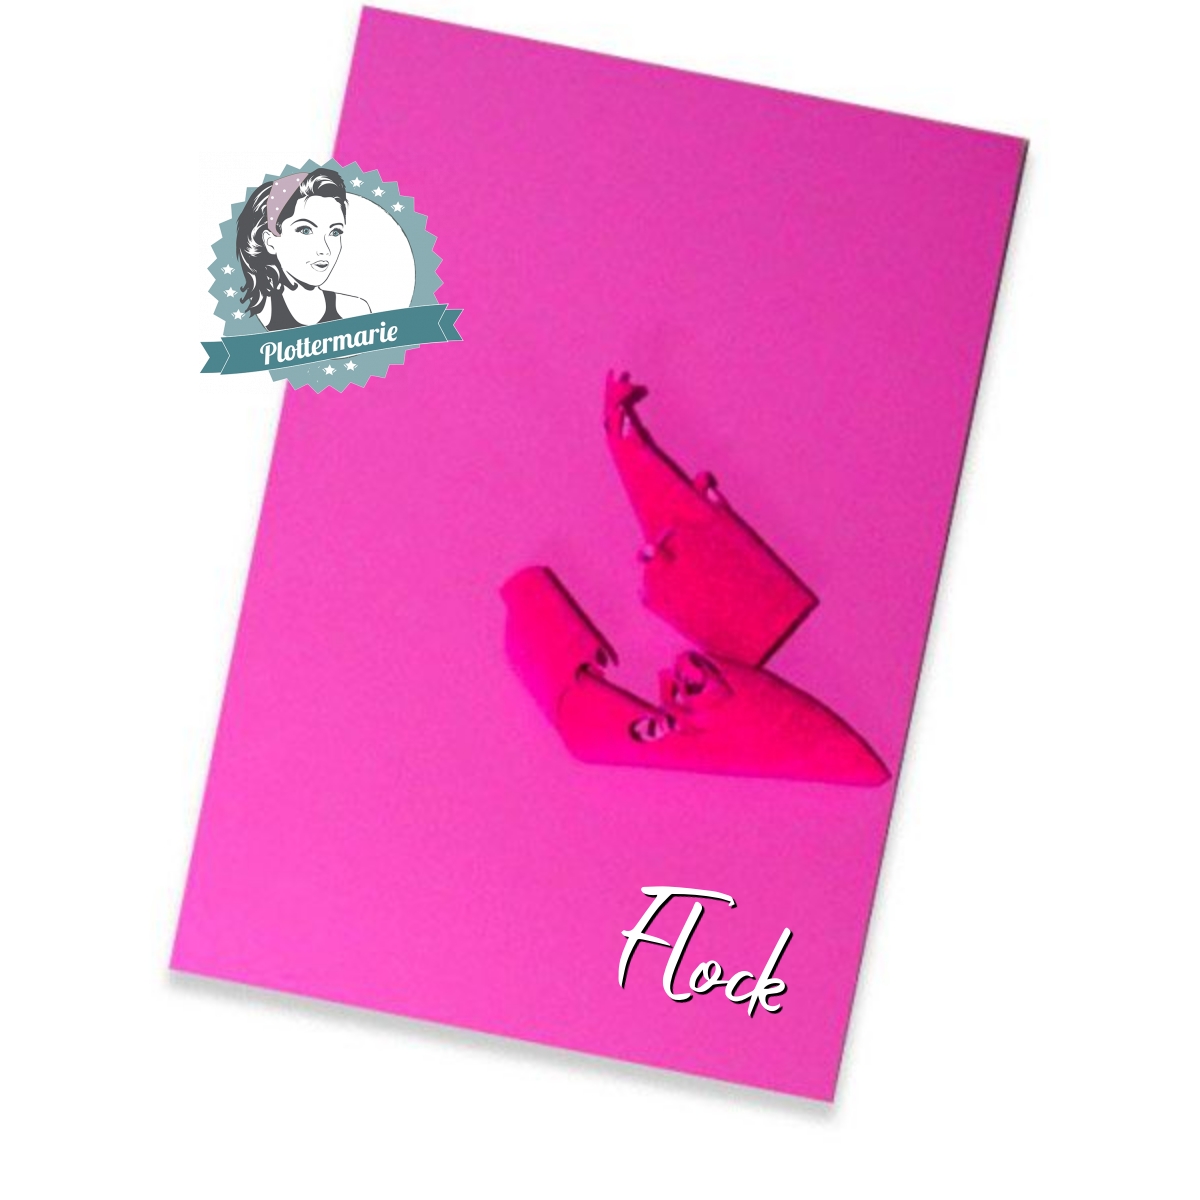 m² Preis 81,67 € Flockfolie Textilfolie DIN A4 Flock Premium Farbe neon pink 